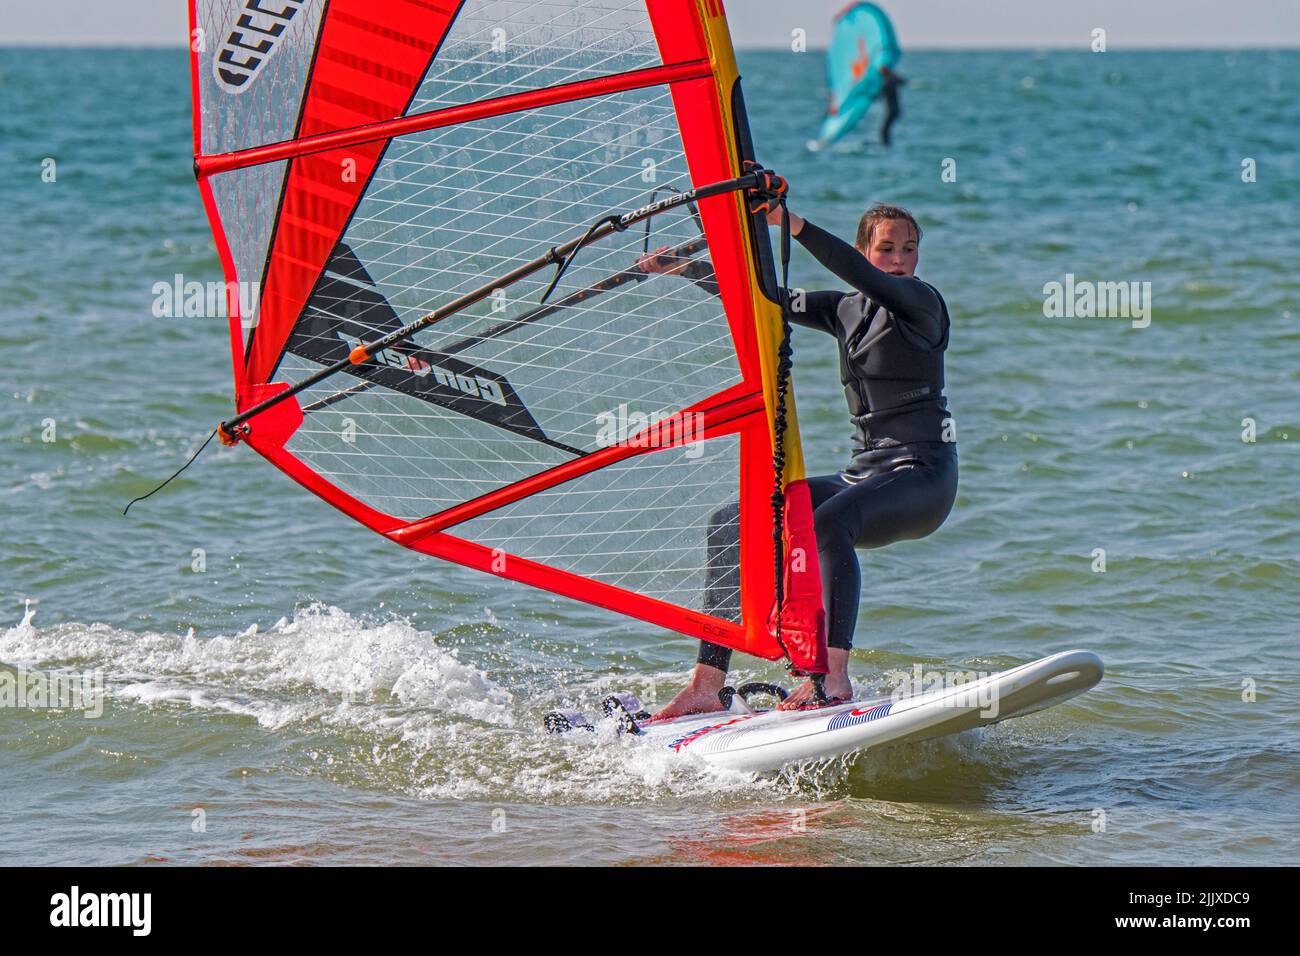 Ragazza / femmina ricreazione windsurf in muta nera praticando il windsurf classico in mare Foto Stock